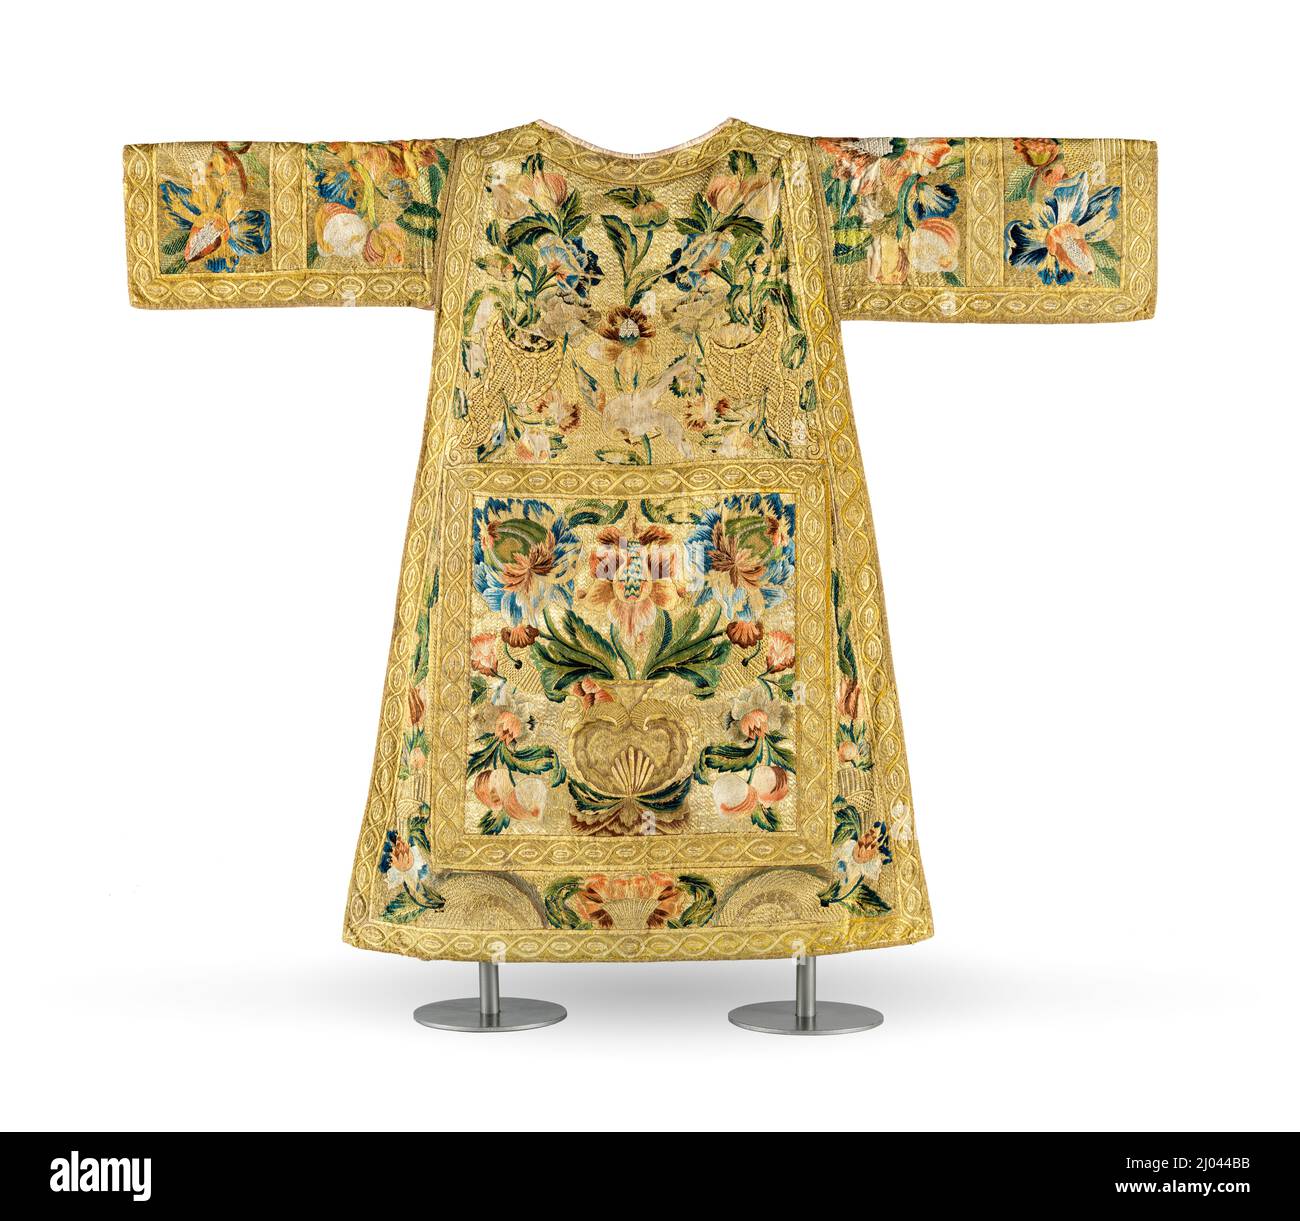 Satz kirchlicher Gewänder (Dalmatic). Mexiko, um 1730. Kostüme; kirchlich. Seidenmatt mit Seide- und Metallgarnstickerei und Metallgeflecht-Besatz Stockfoto